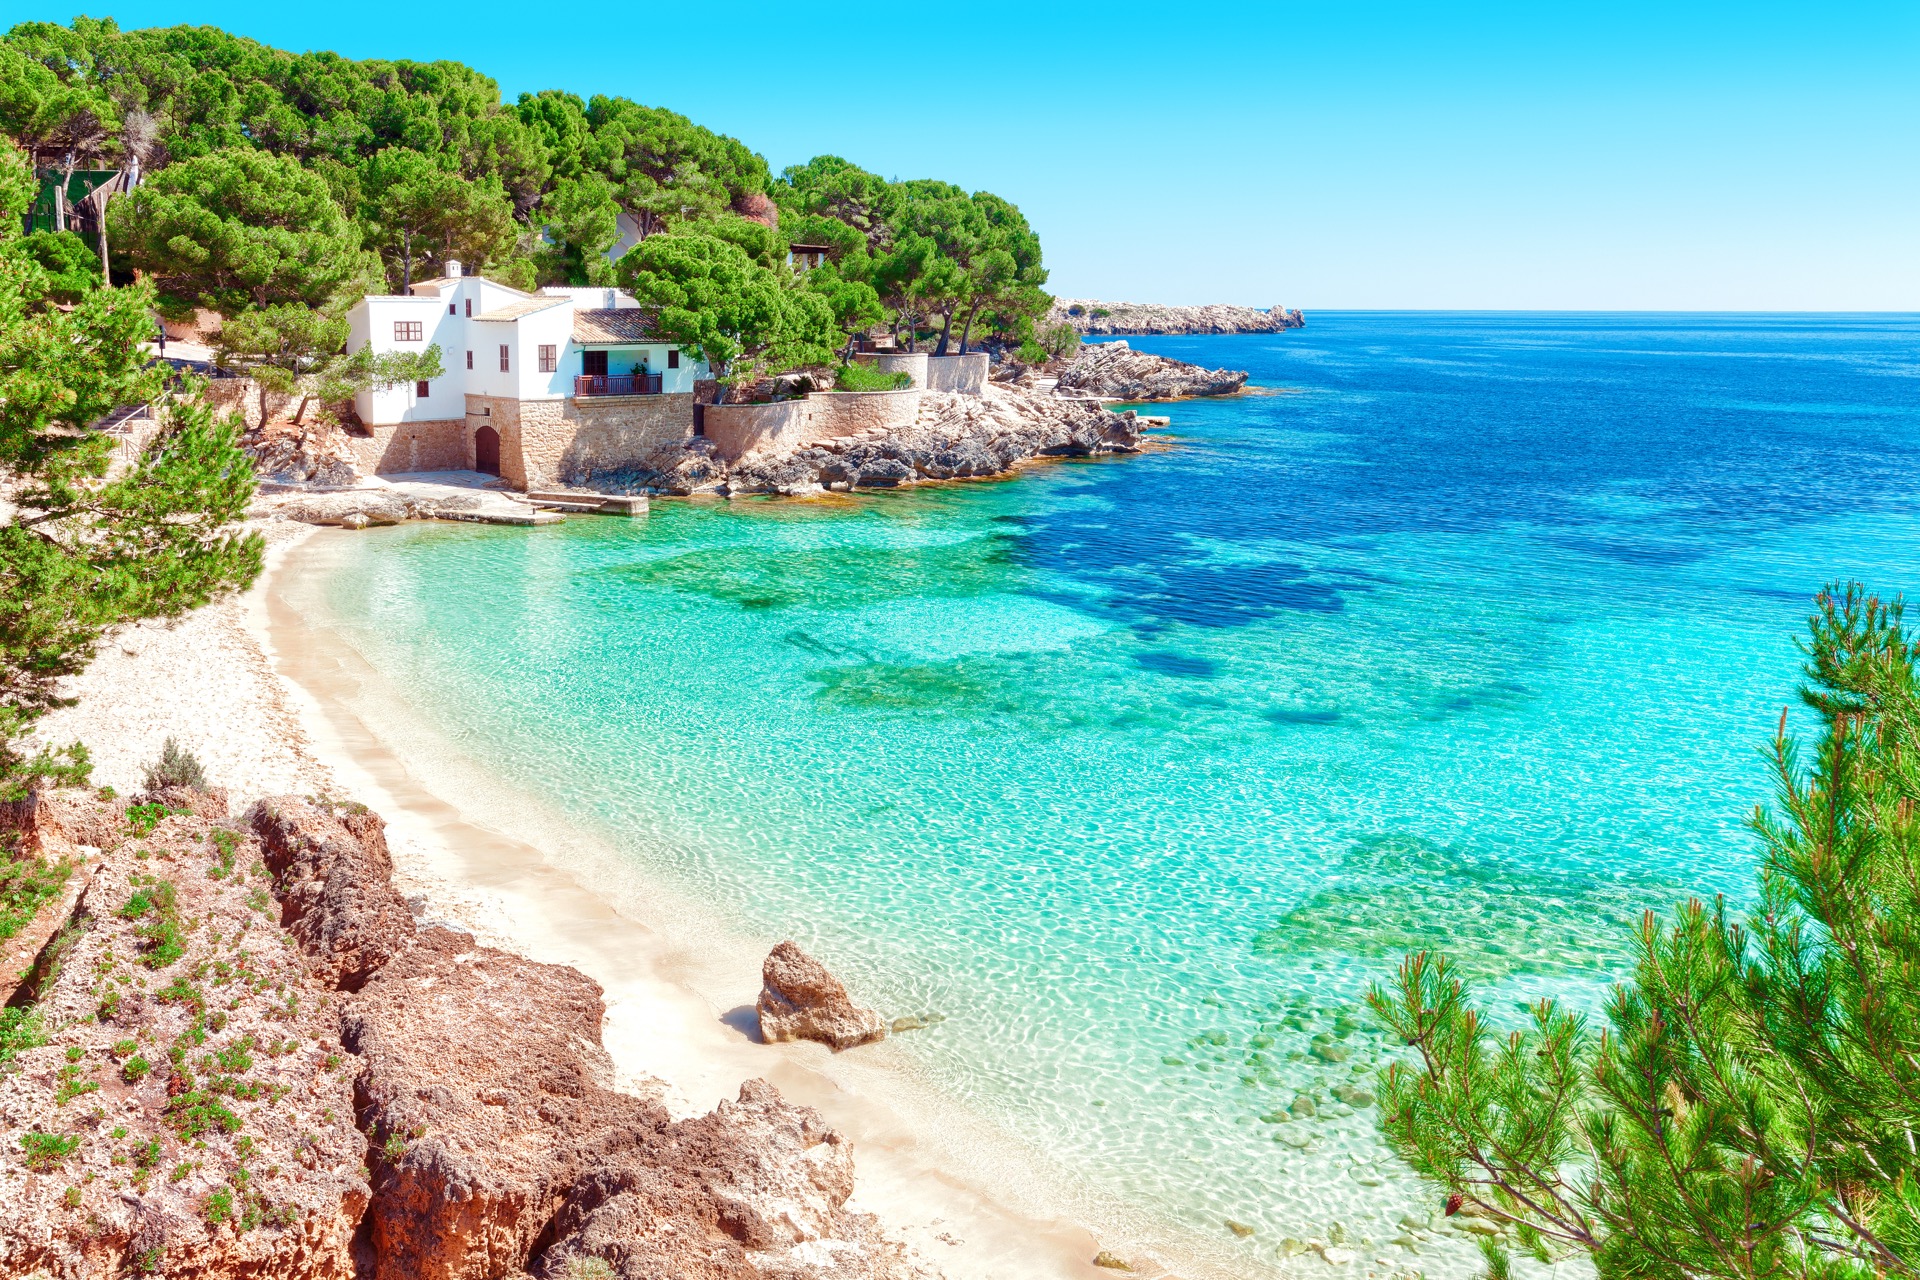 L'Espagne, destination idéale pour profiter des intersaisons, loin de la chaleur de l'été. © pixelliebe, Adobe Stock